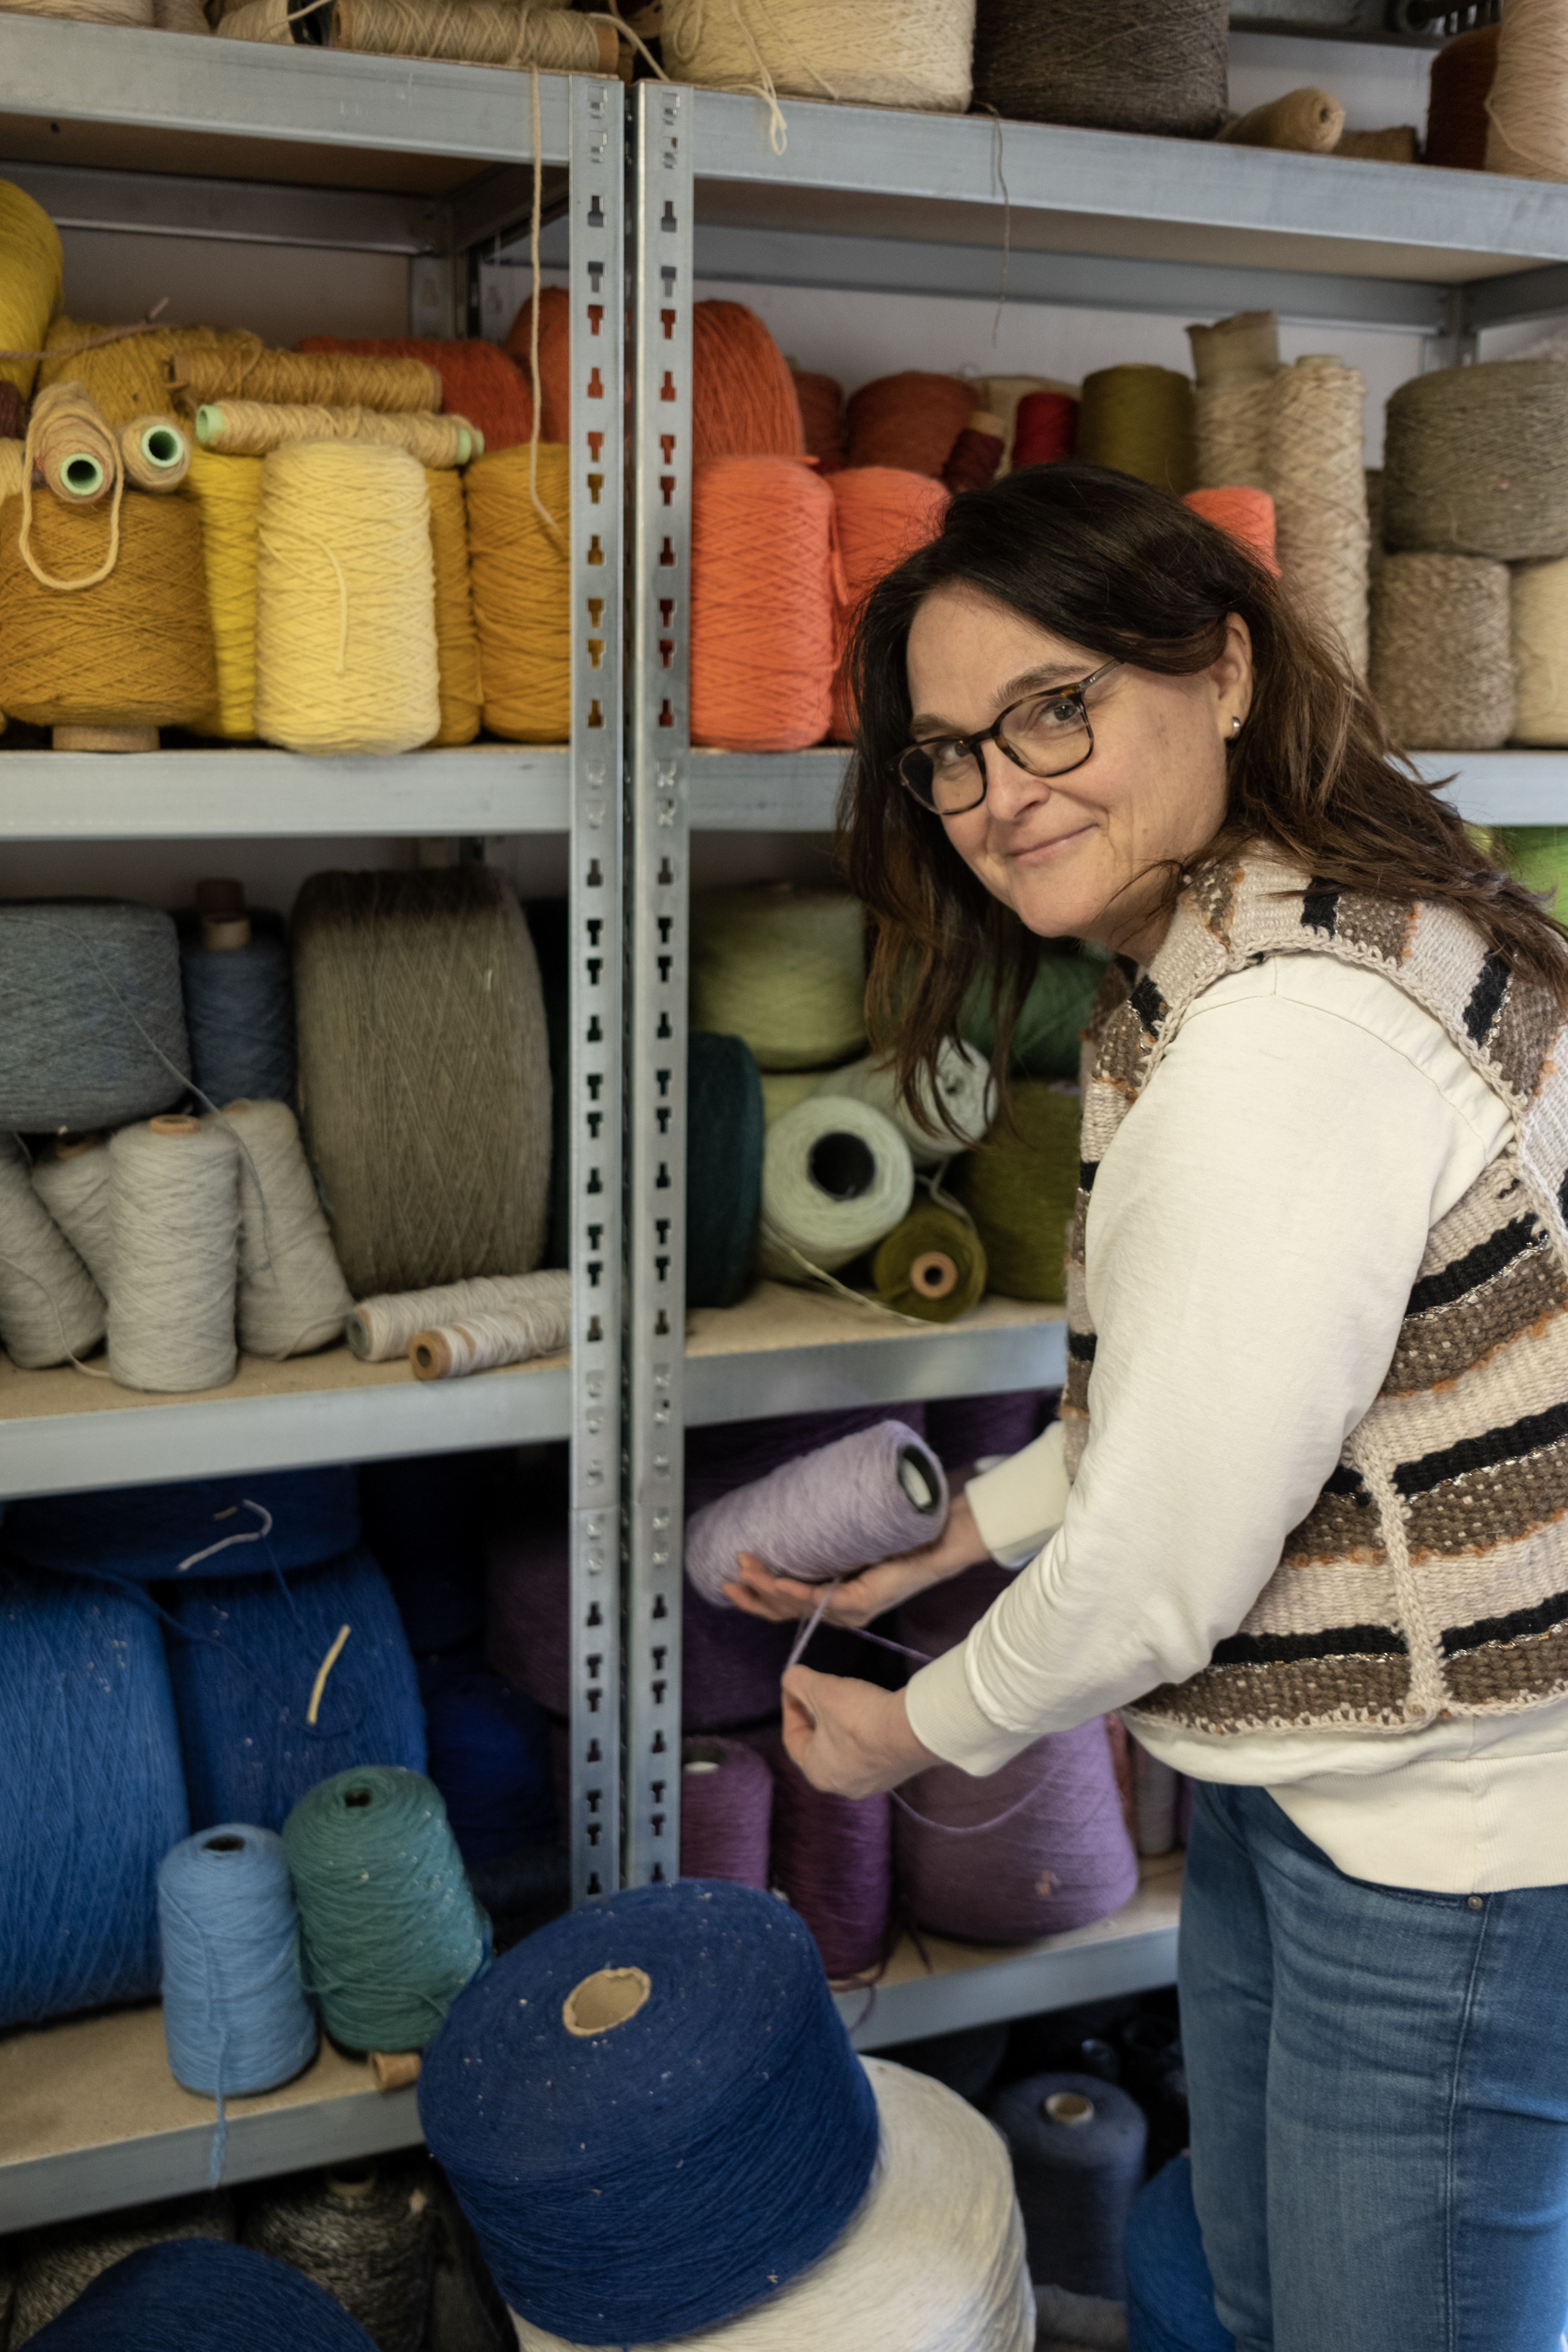 Weven Judith IJpelaar weaving art craft hobby textiel textile arts